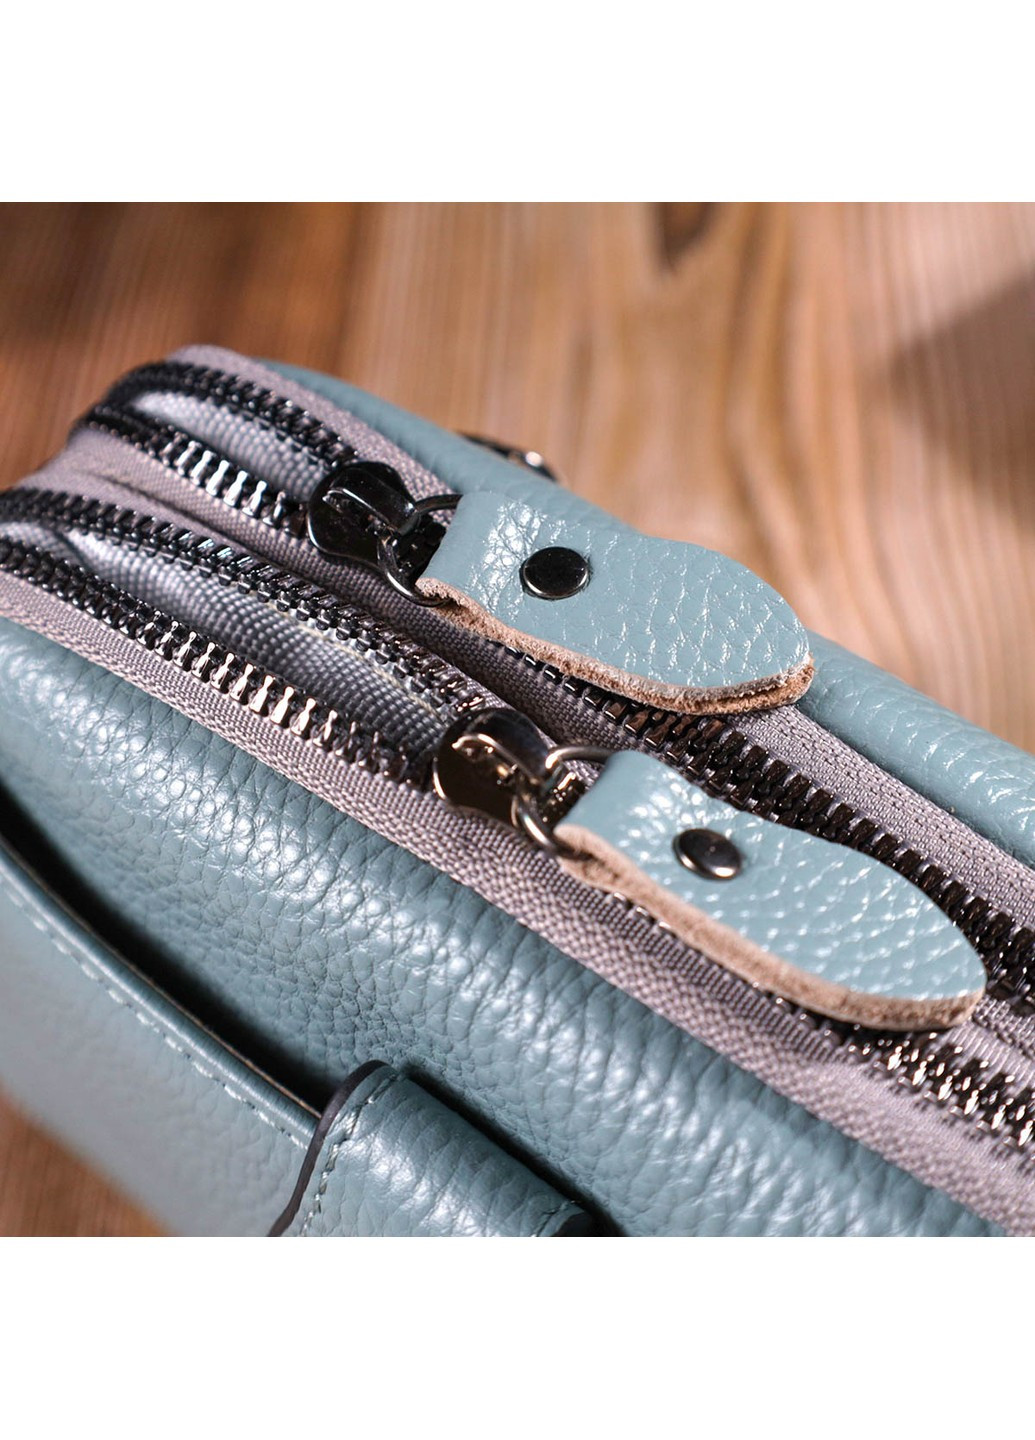 Модная сумка-клатч в стильном дизайне из натуральной кожи 22087 Серо-голубая Vintage (260359849)